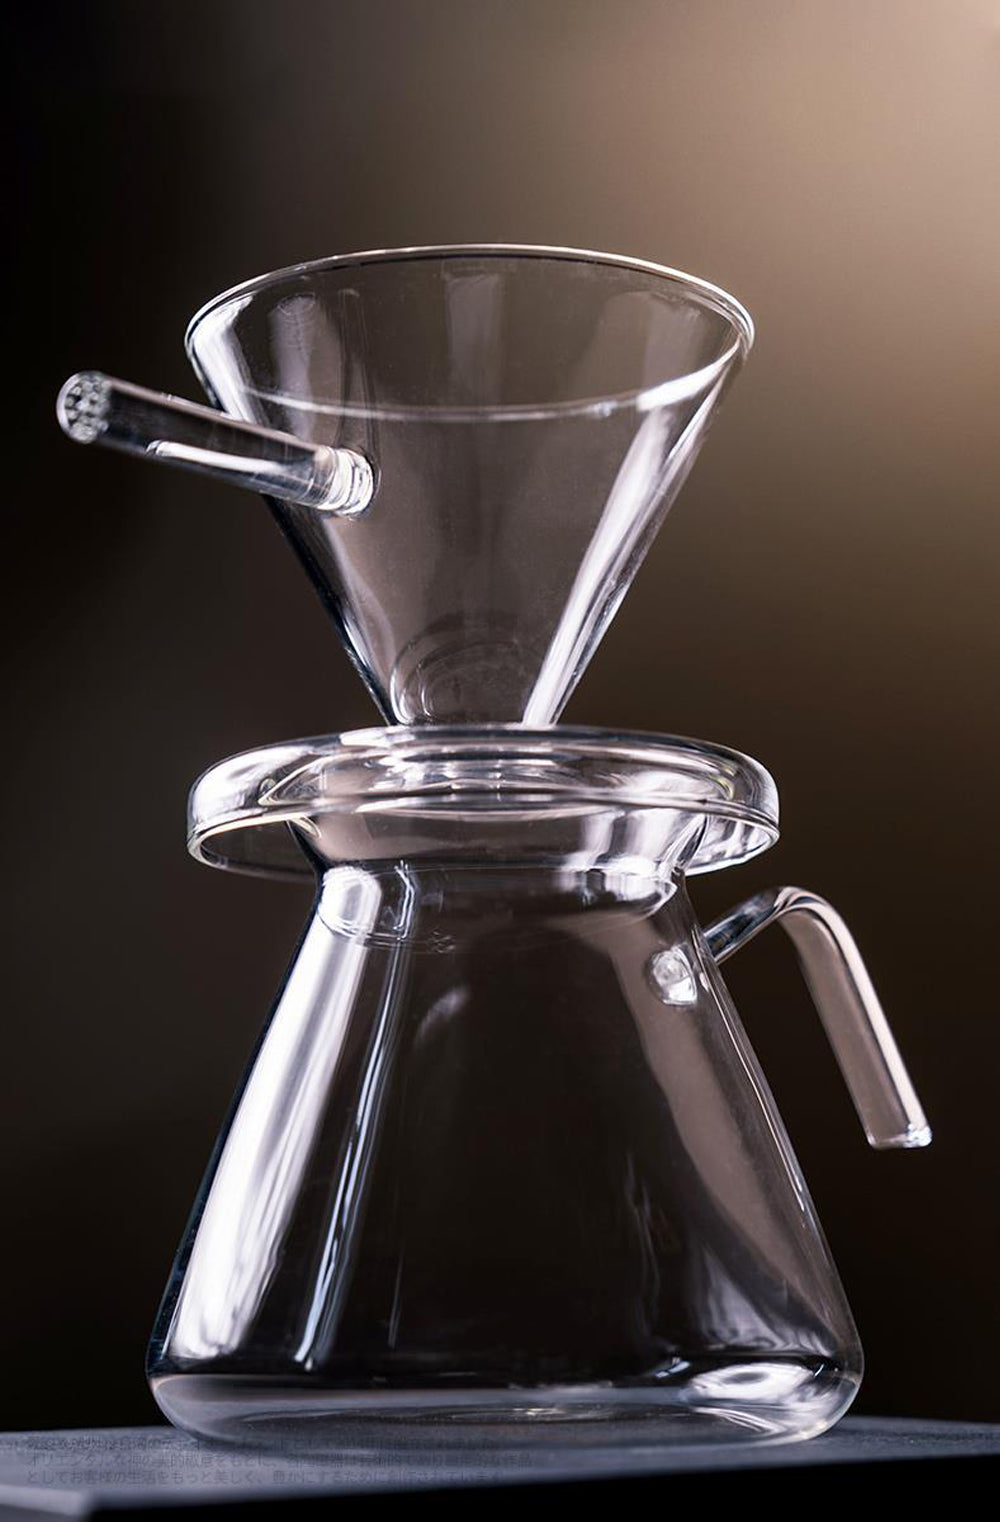 IwaiLoft コーヒーサーバー ガラスドリッパー セット コーヒーポット 500mL V60 コーヒードリッパー 耐熱ガラス 円錐型 ハ – 茶器・ コーヒー用品を選ぶ IwaiLoft